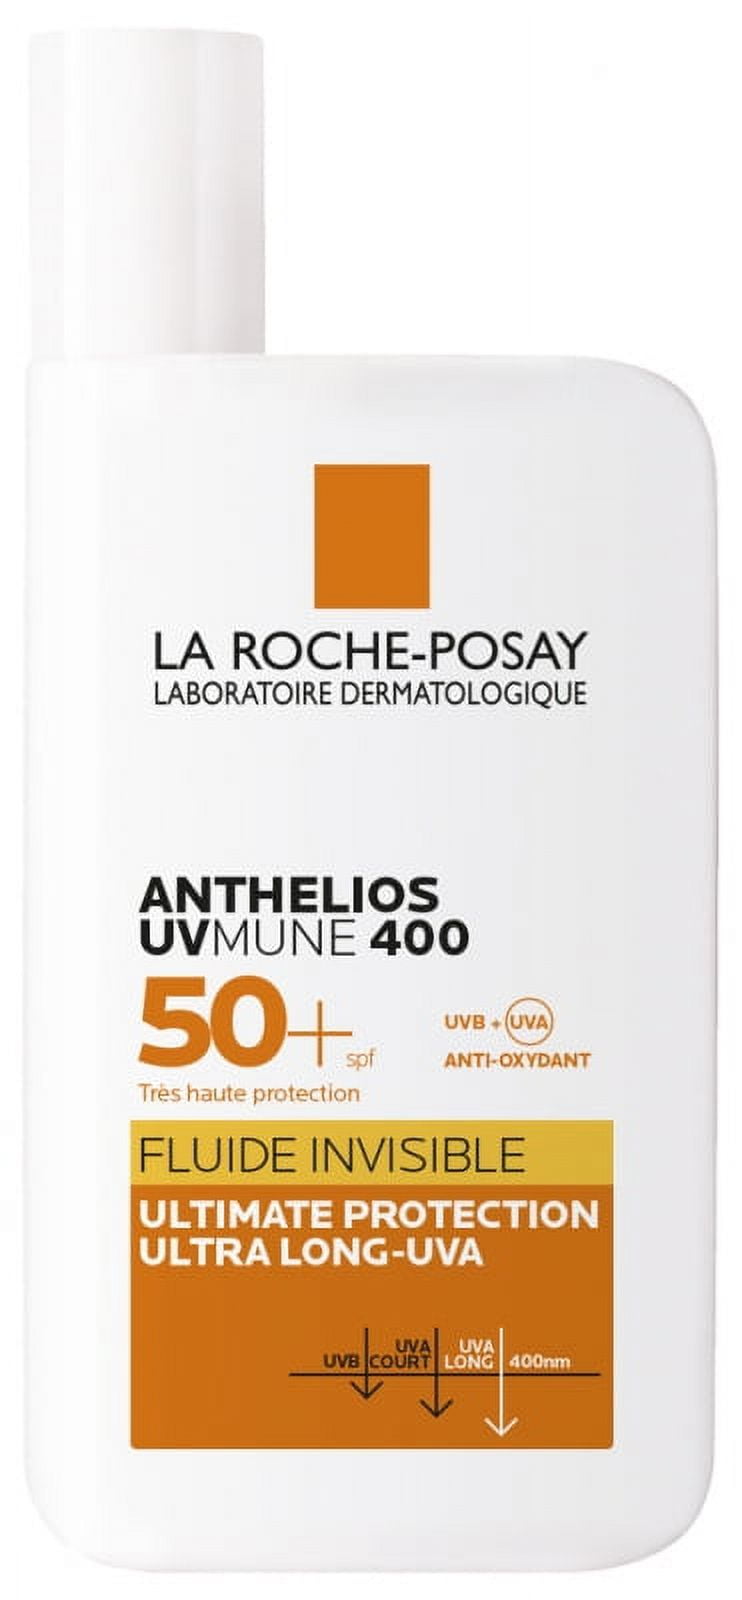 La Roche-Posay Anthelios UVmune 400 Fluid Oil Control SPF50+ 50ml (1.7oz) 